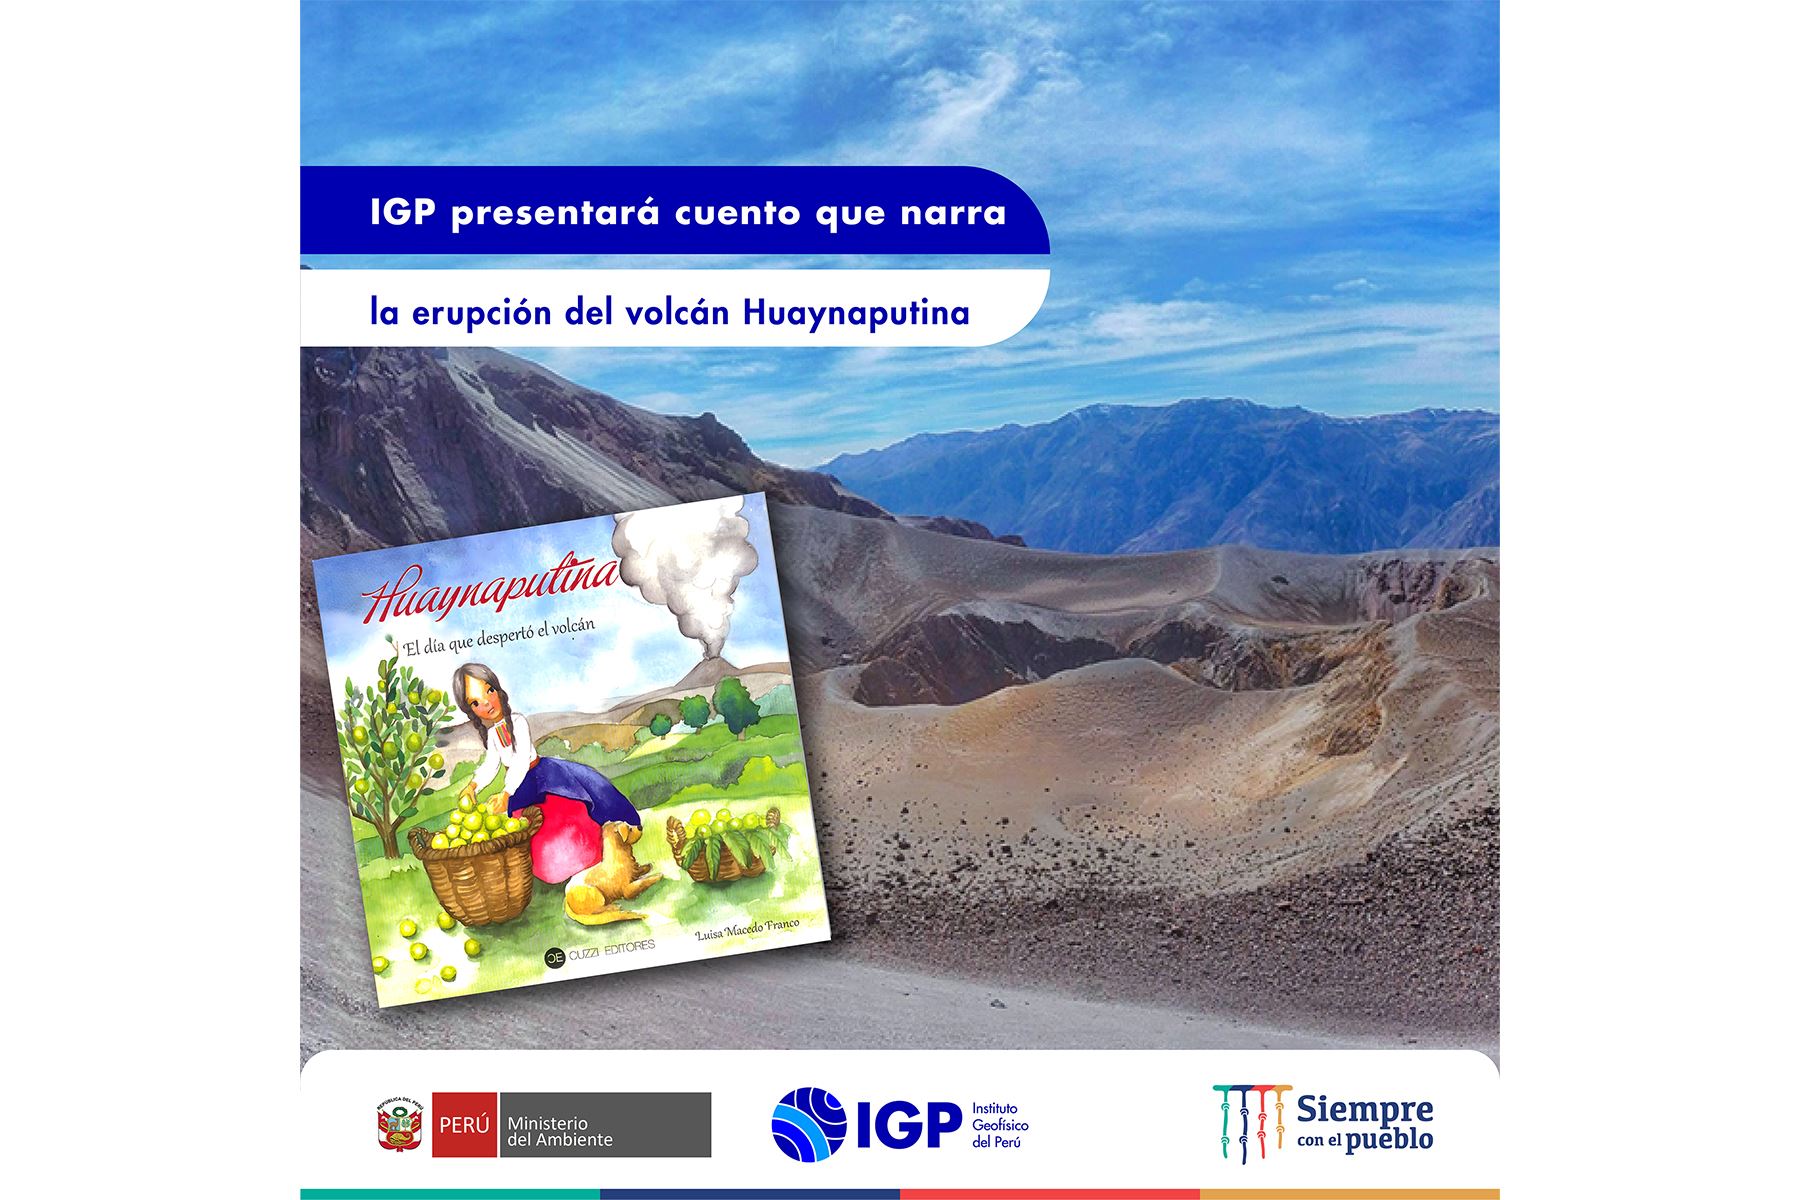 El IGP presentará en Moquegua cuento que narra la erupción del volcán Huaynaputina (Moquegua) ocurrida en 1600. Foto: ANDINA/difusión.